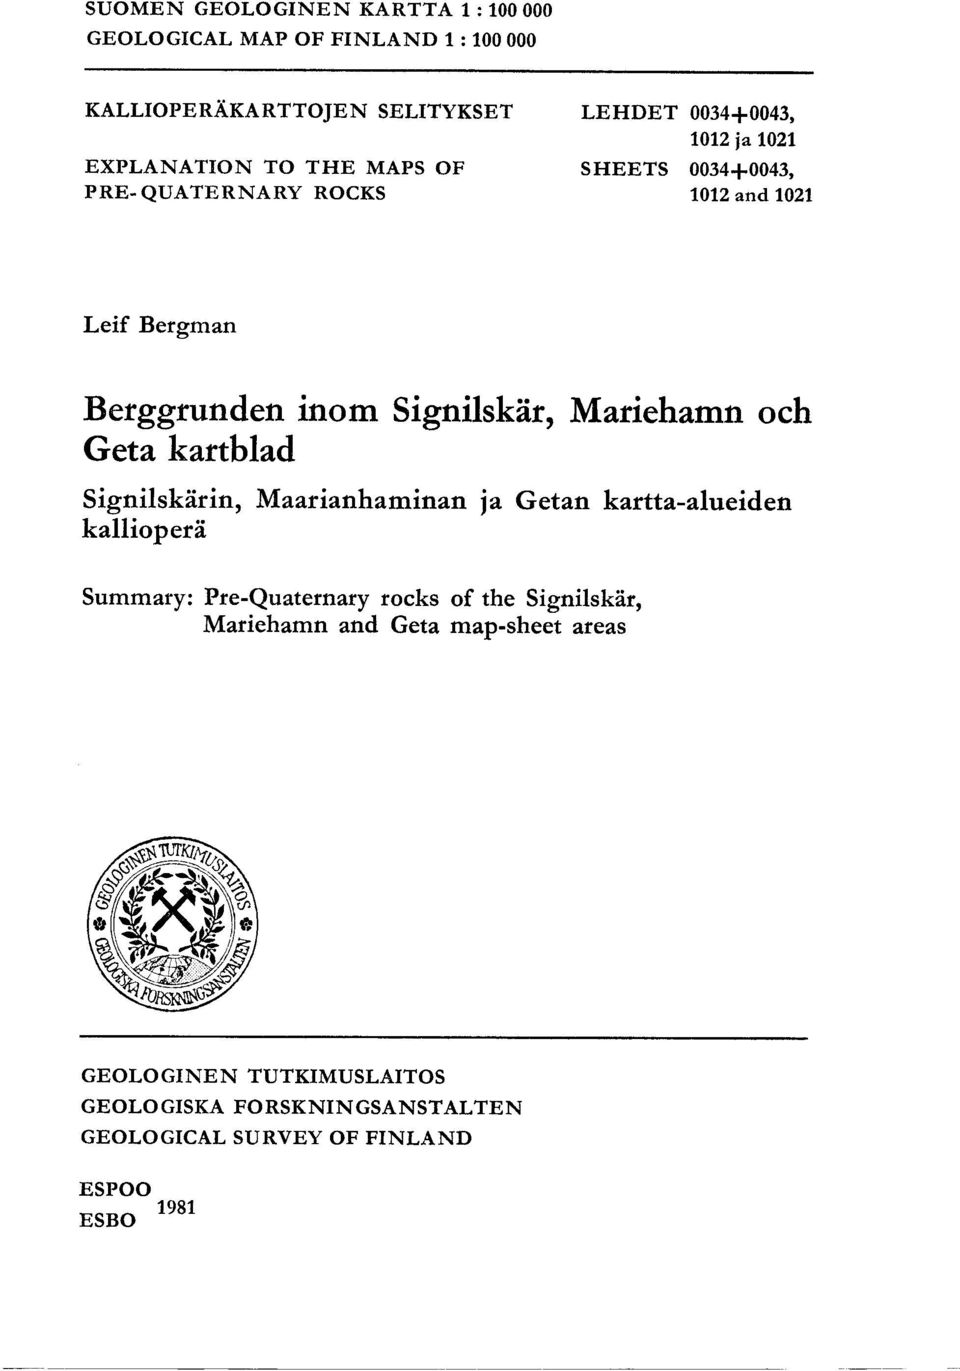 Mariehamn och Geta kartblad Signilskarin, Maarianhaminan ja Getan kartta-alueiden kalliopera Summary: Pre-Quaternary rocks of the